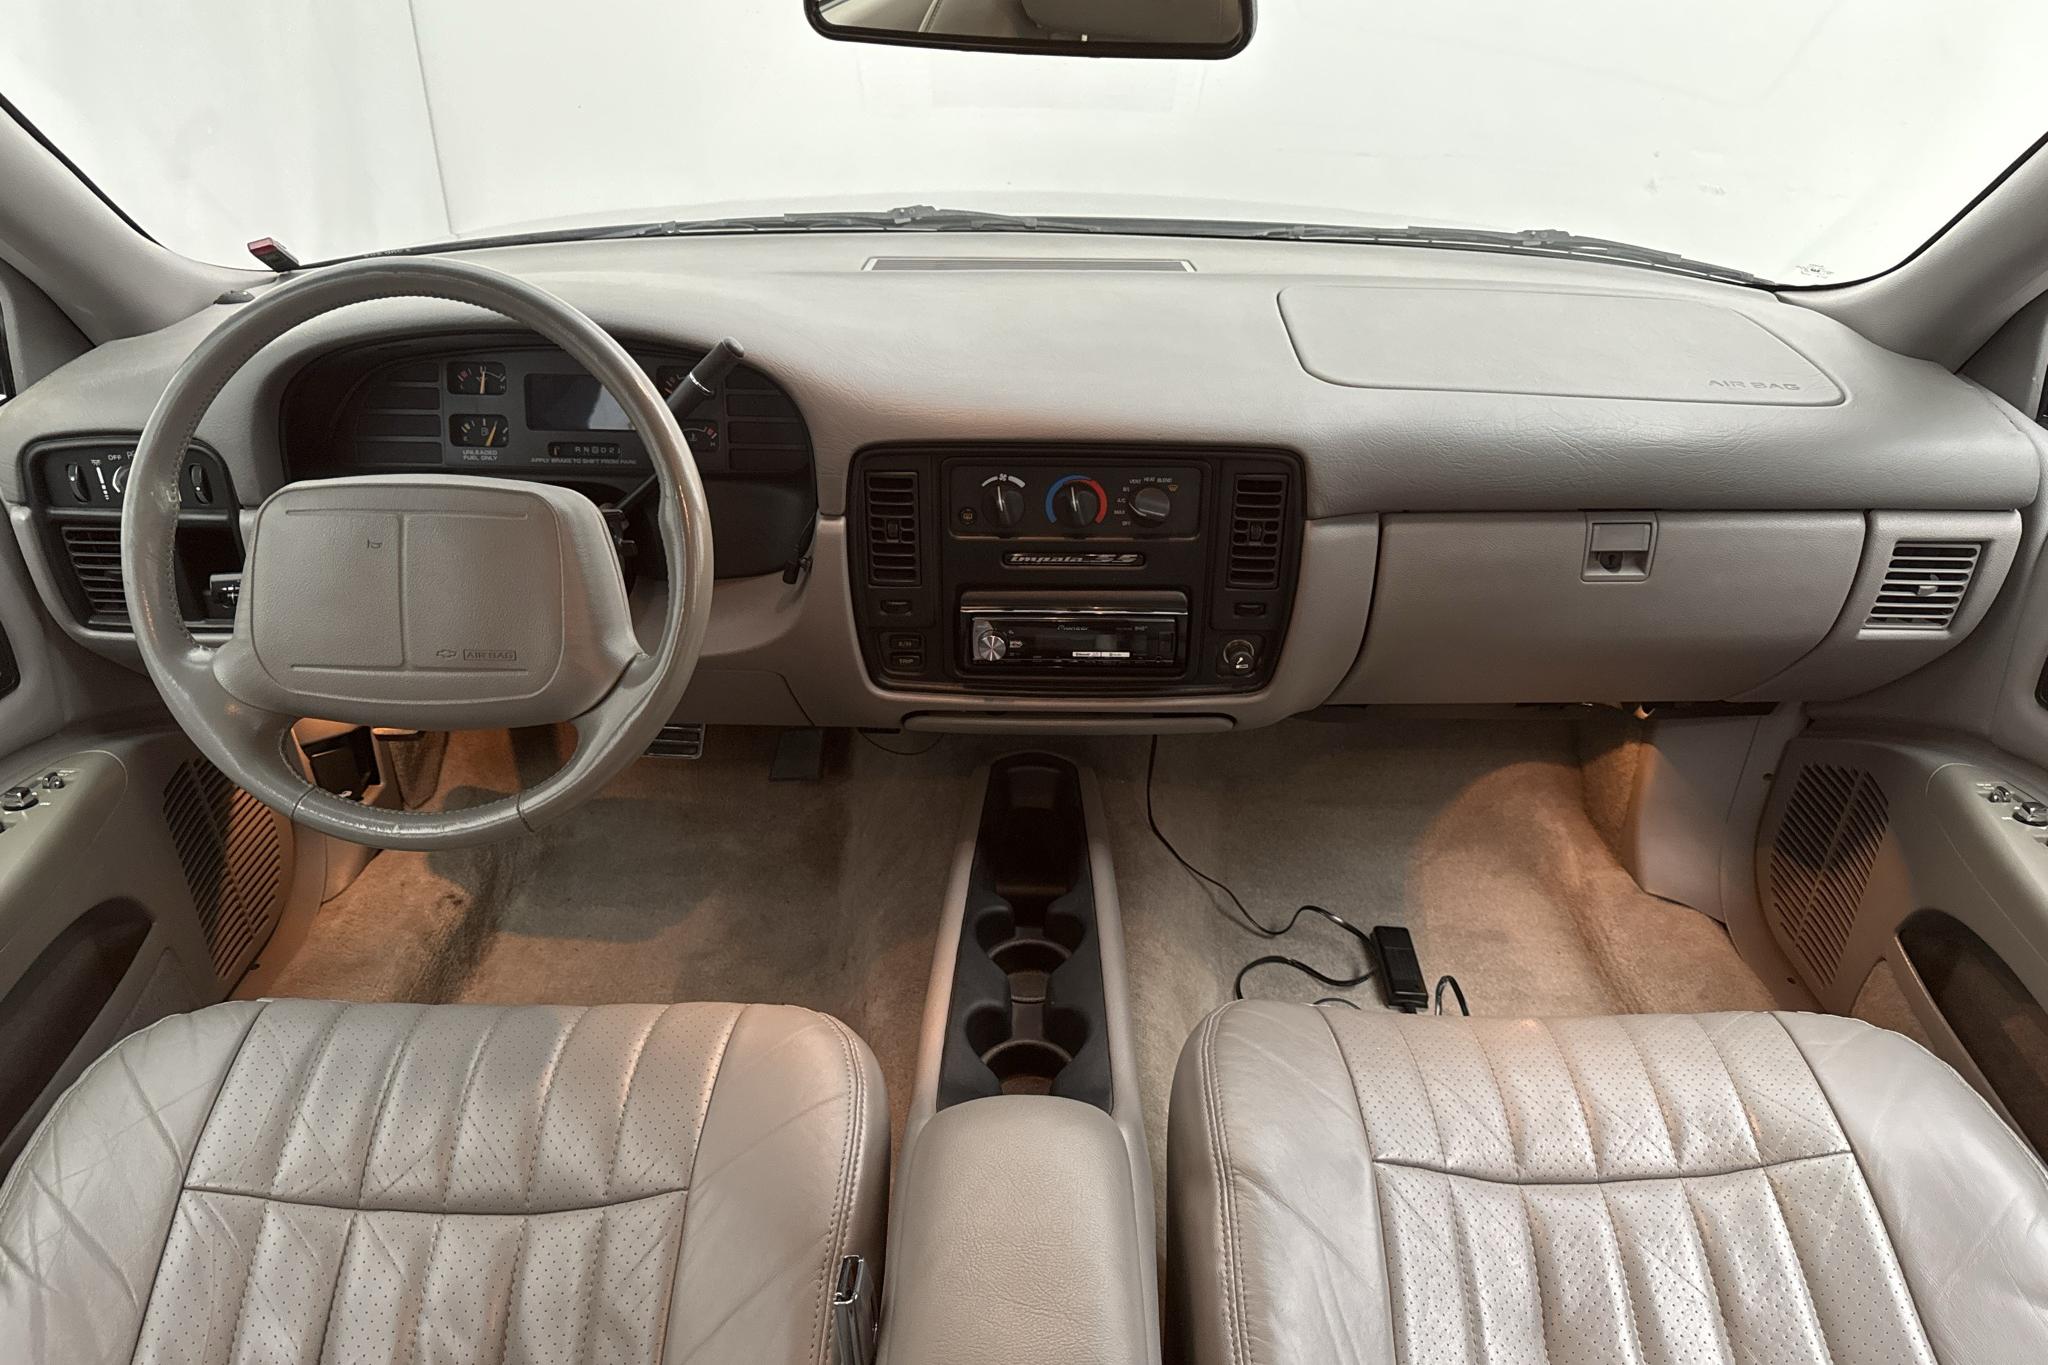 Chevrolet Impala SS 5.7 V8 (265hk) - 117 210 km - Automaattinen - Dark Red - 1995